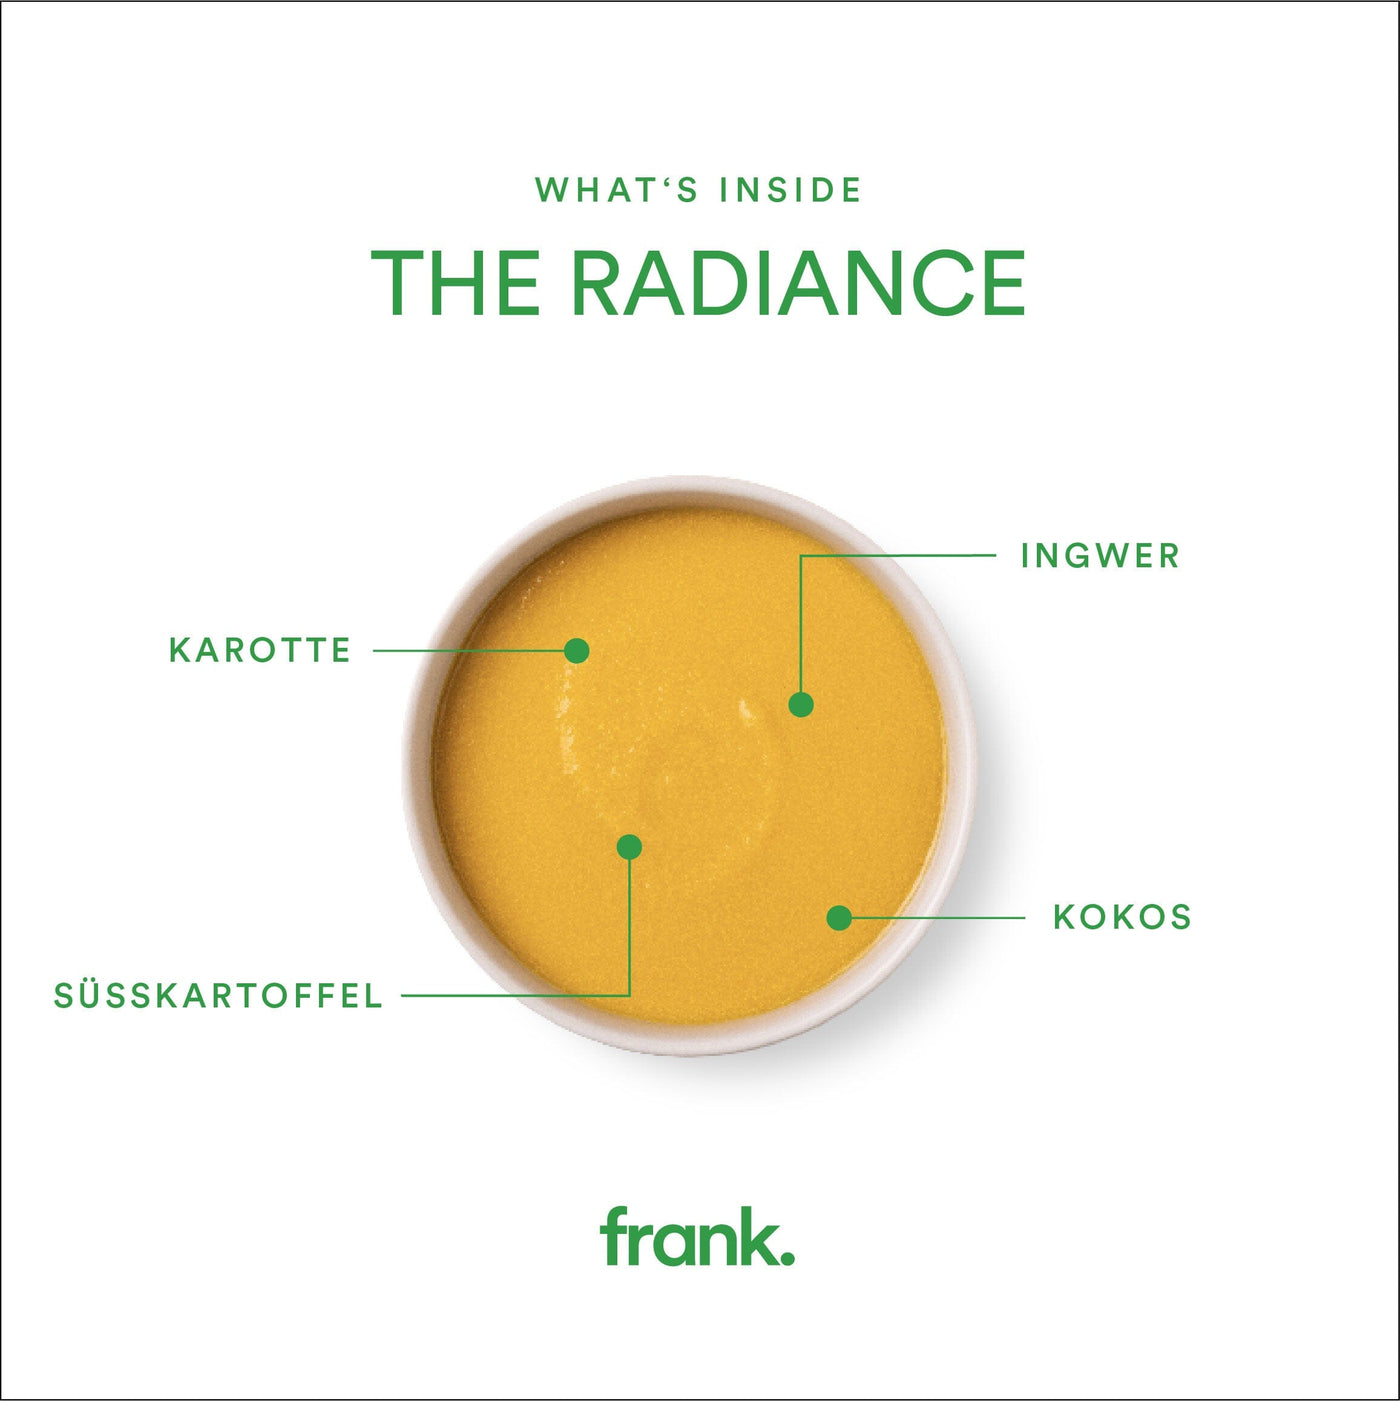 Darstellung der bio Suppe The Radiance mit Karotte, Kokos und Ingwer von frank in einer Schüssel angerichtet